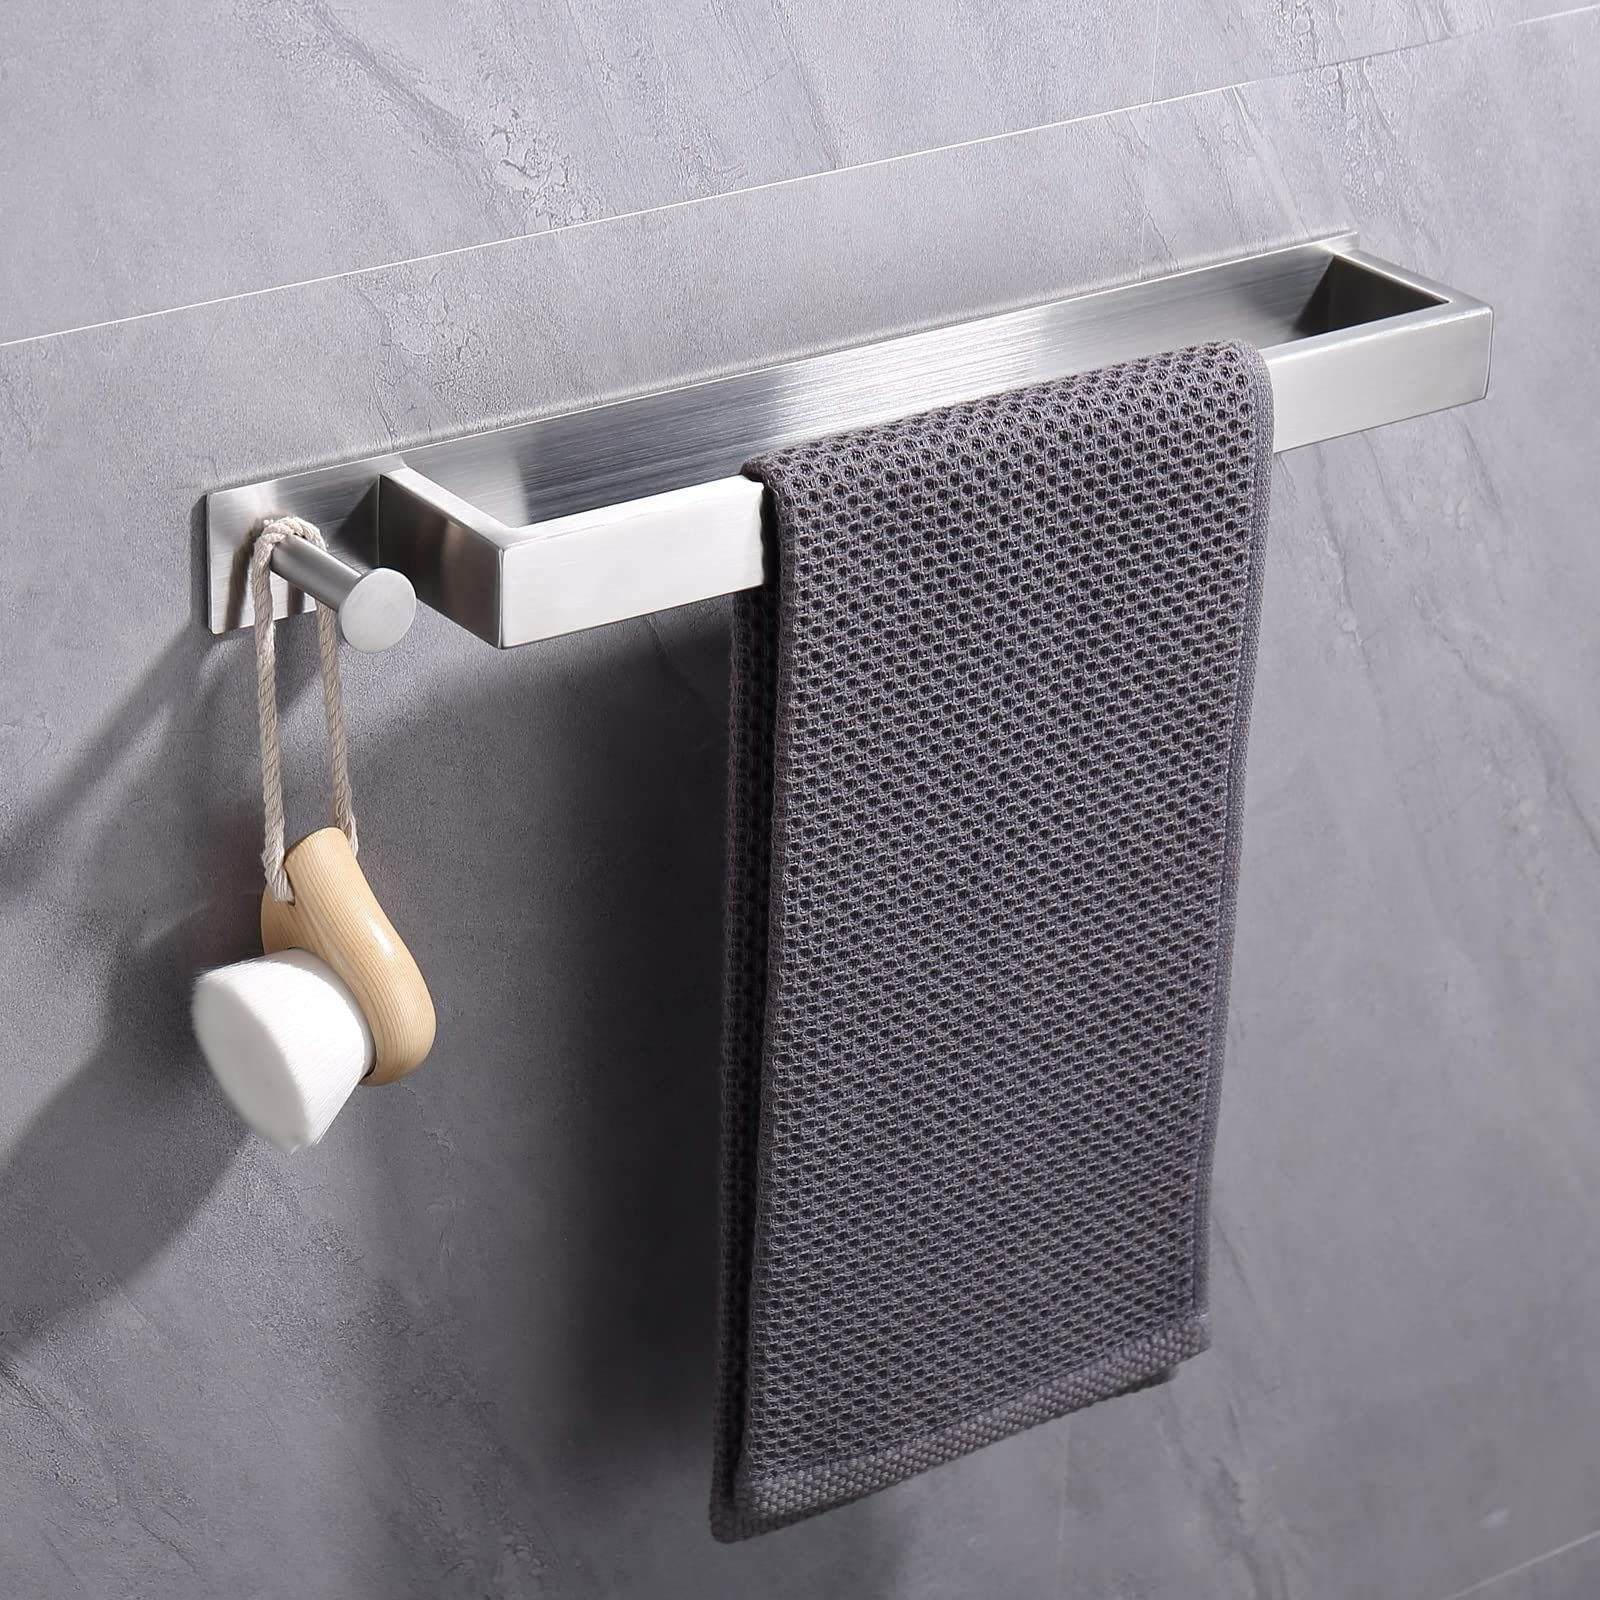 CALIYO Handtuchstange Edelstahl Silber kleber, für mit Badetuchhalter Badezimmer Gästehandtücher Haken Halter Handtuch Handtuchhalter